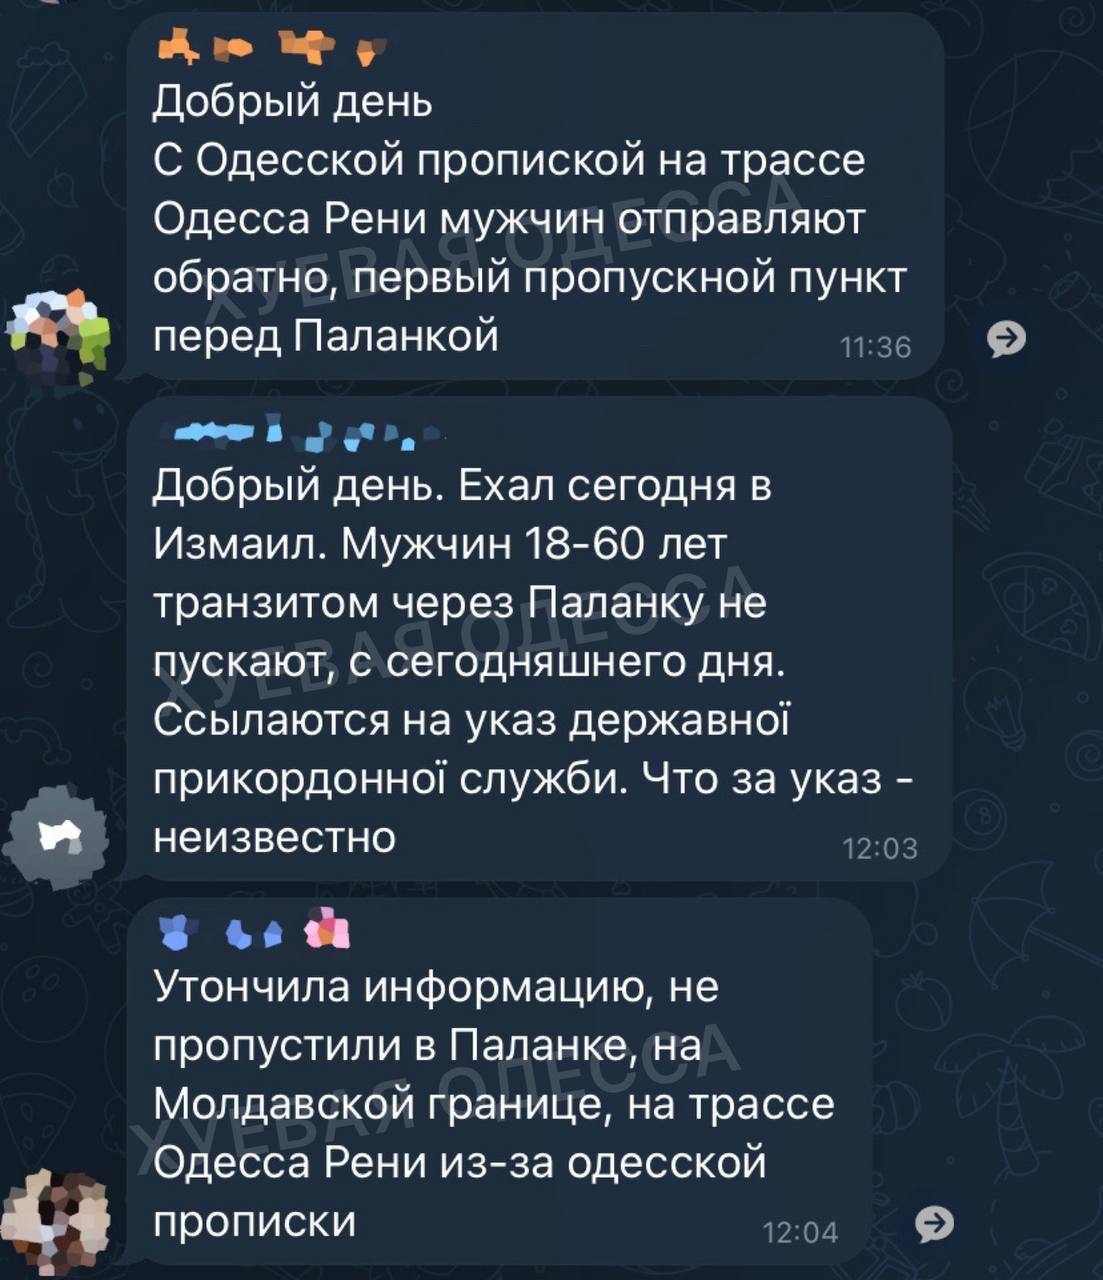 Пограничники не пропускают «подозрительных мужчин призывного возраста» через транзитный участок трассы Одесса-Рени